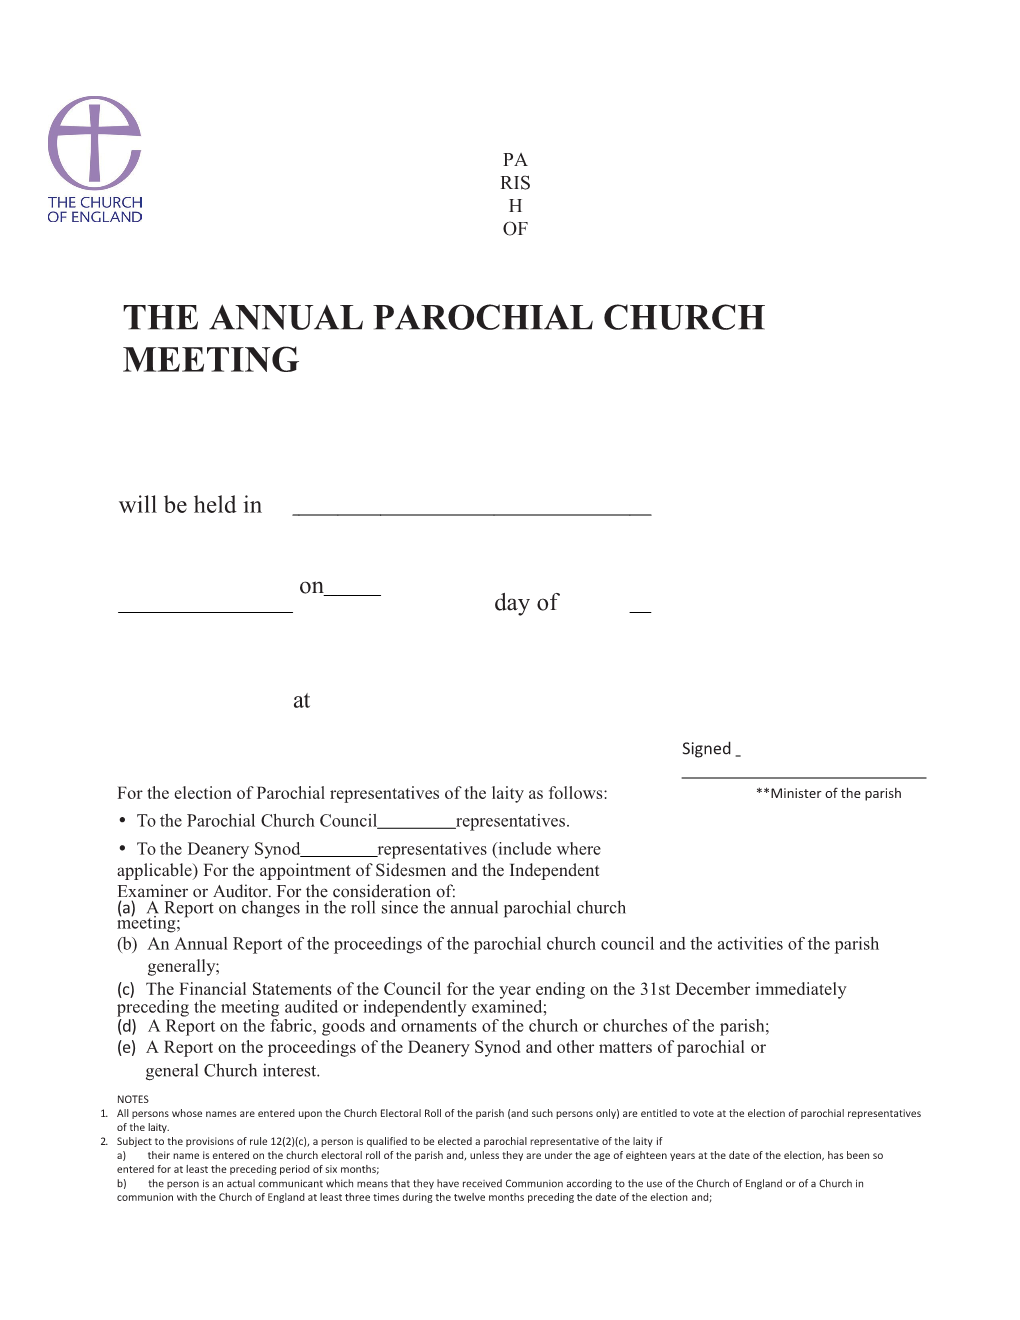 The Annual Parochial Churchmeeting